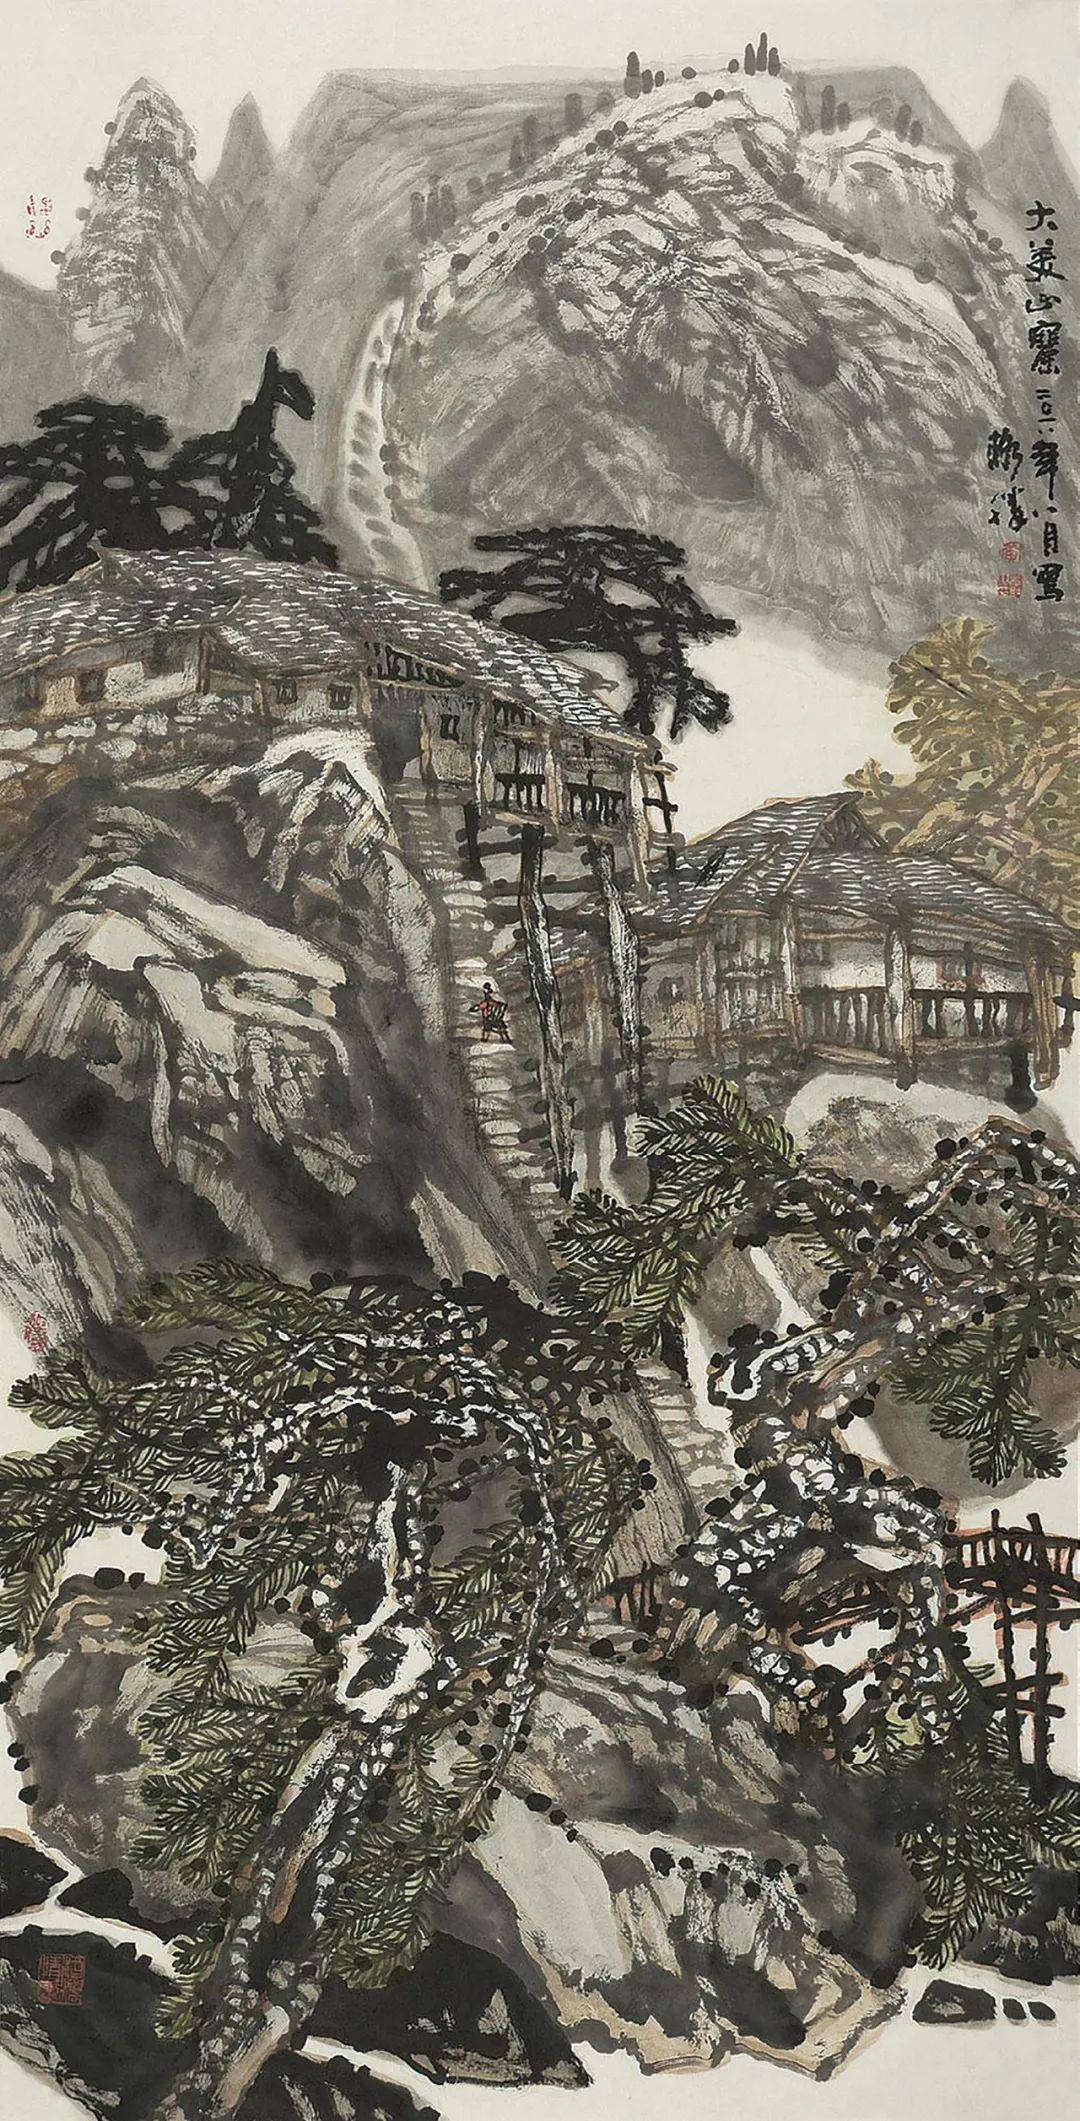 第1517期:黄格胜——2019年最高成交价前10幅作品,中国画家拍卖成交